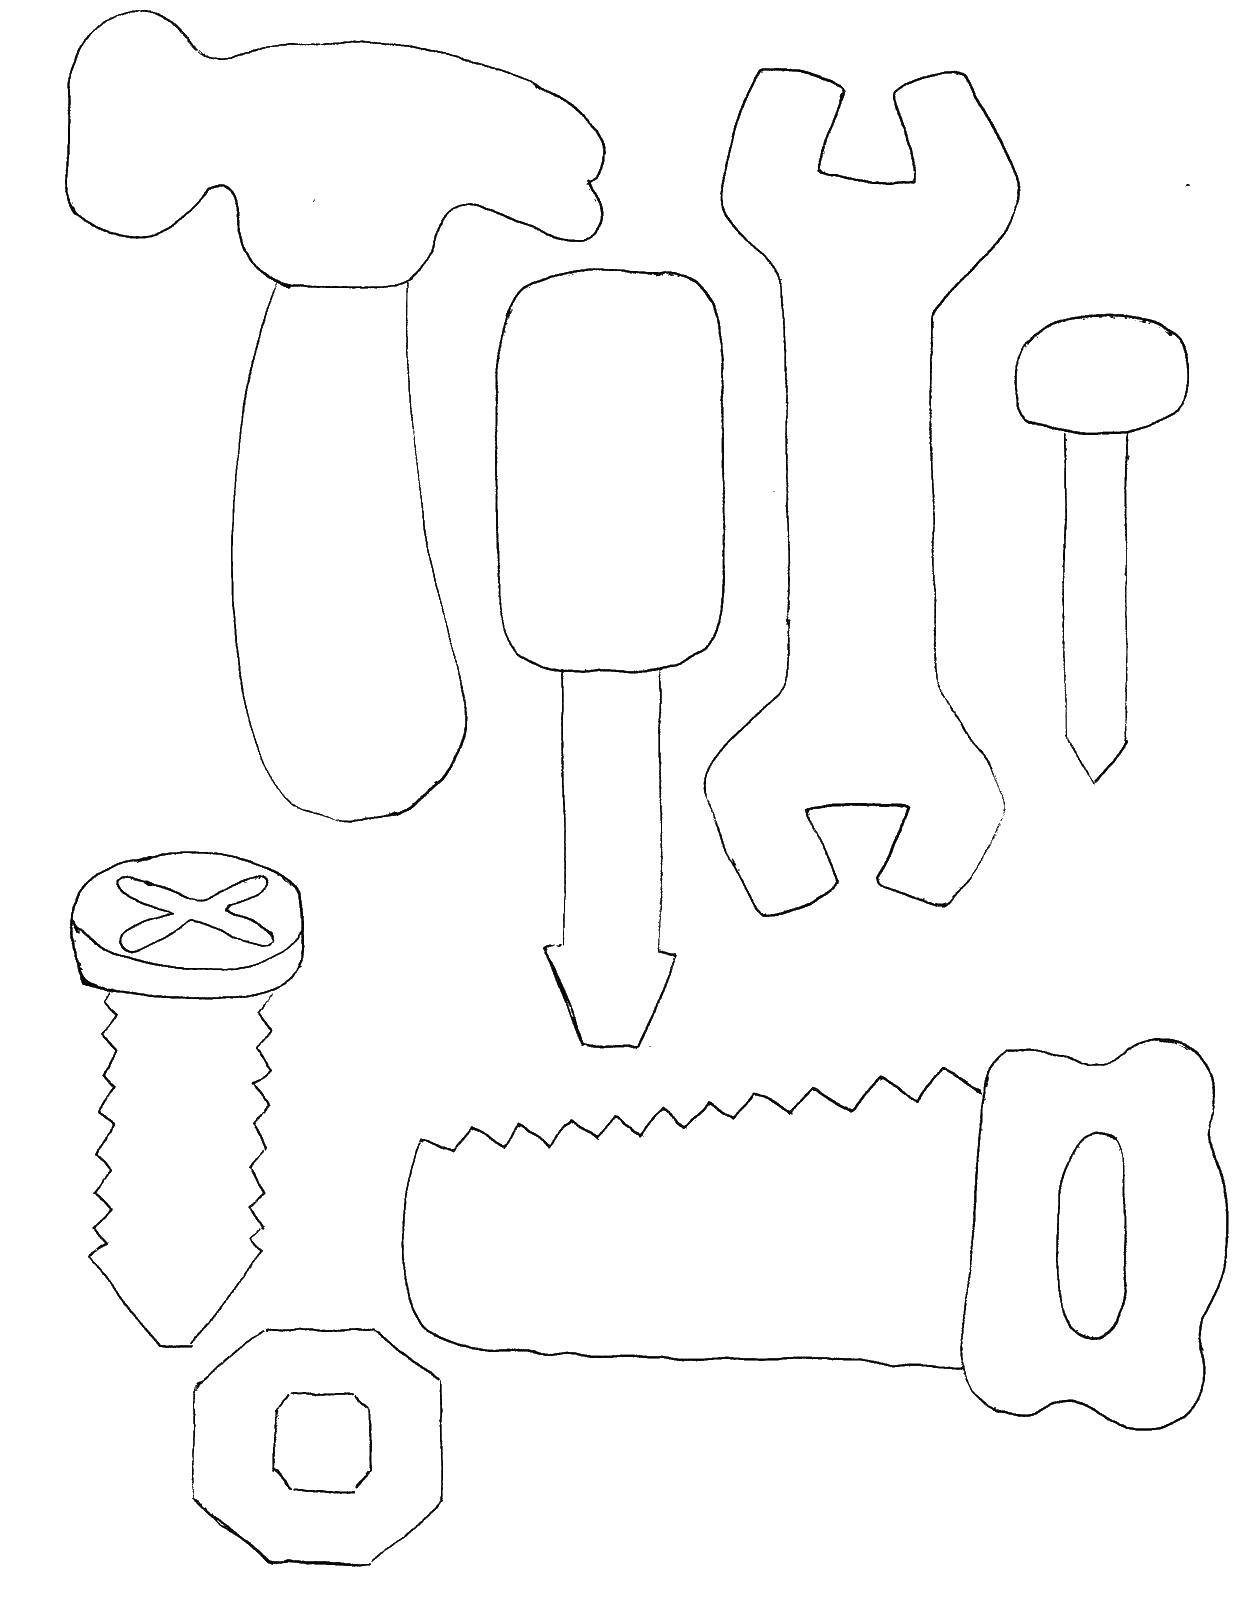 Раскраска молотка Строителя и инструментов на стройке (молоток, инструменты, стройка)